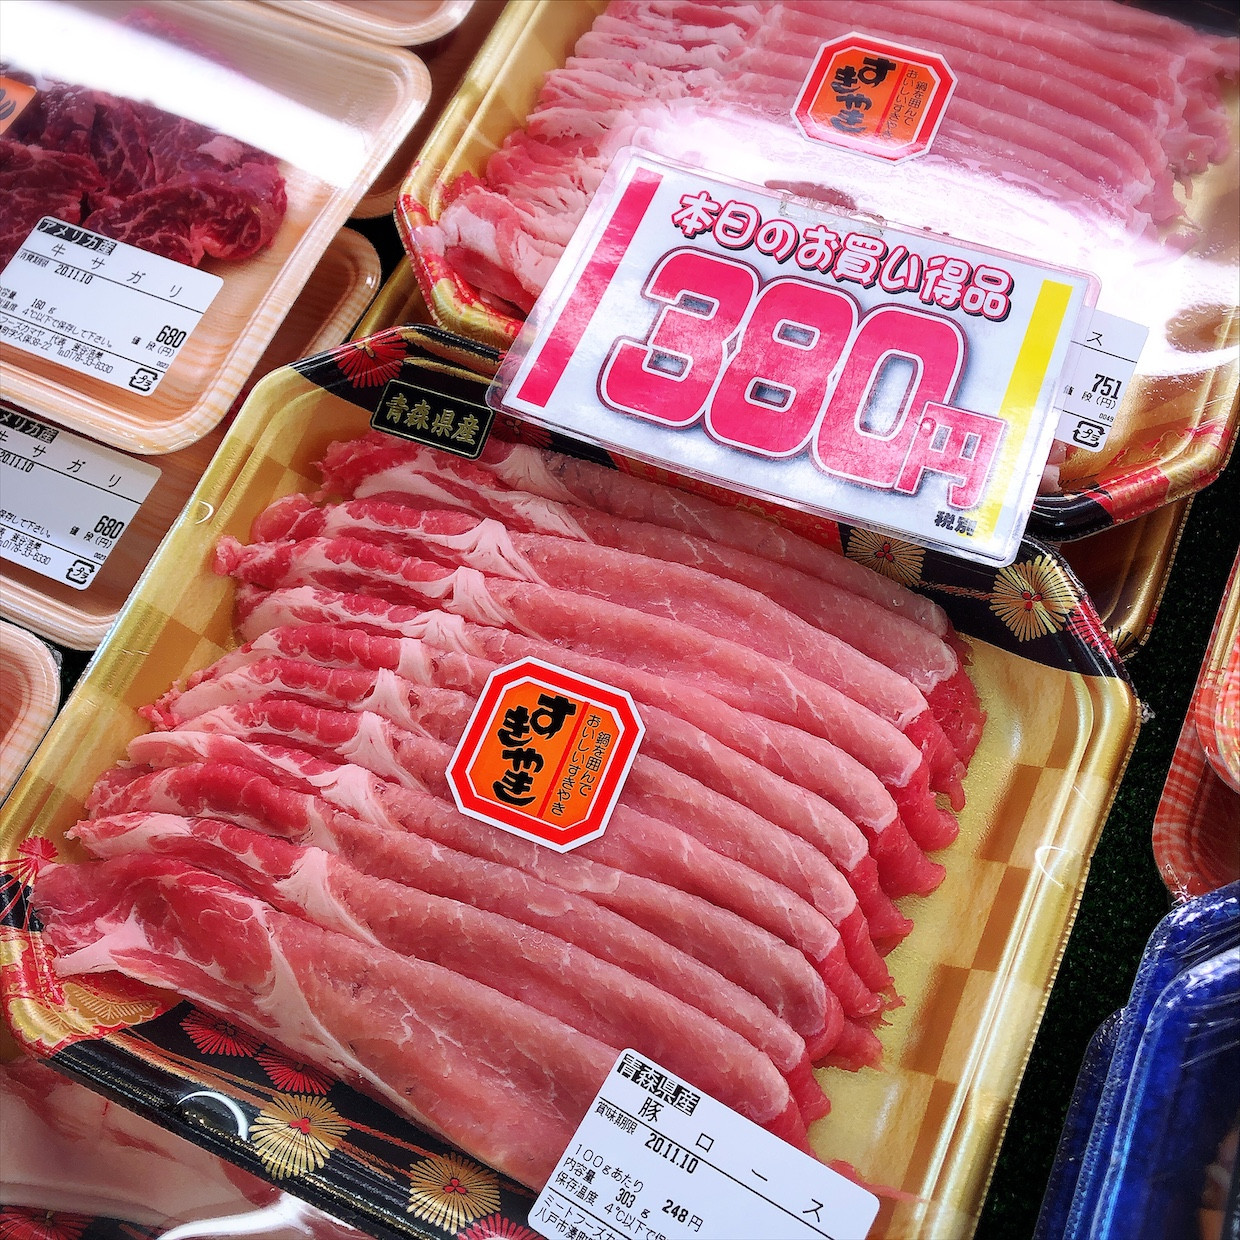 本日は青森県産豚ロースすき焼き用がお買得です。